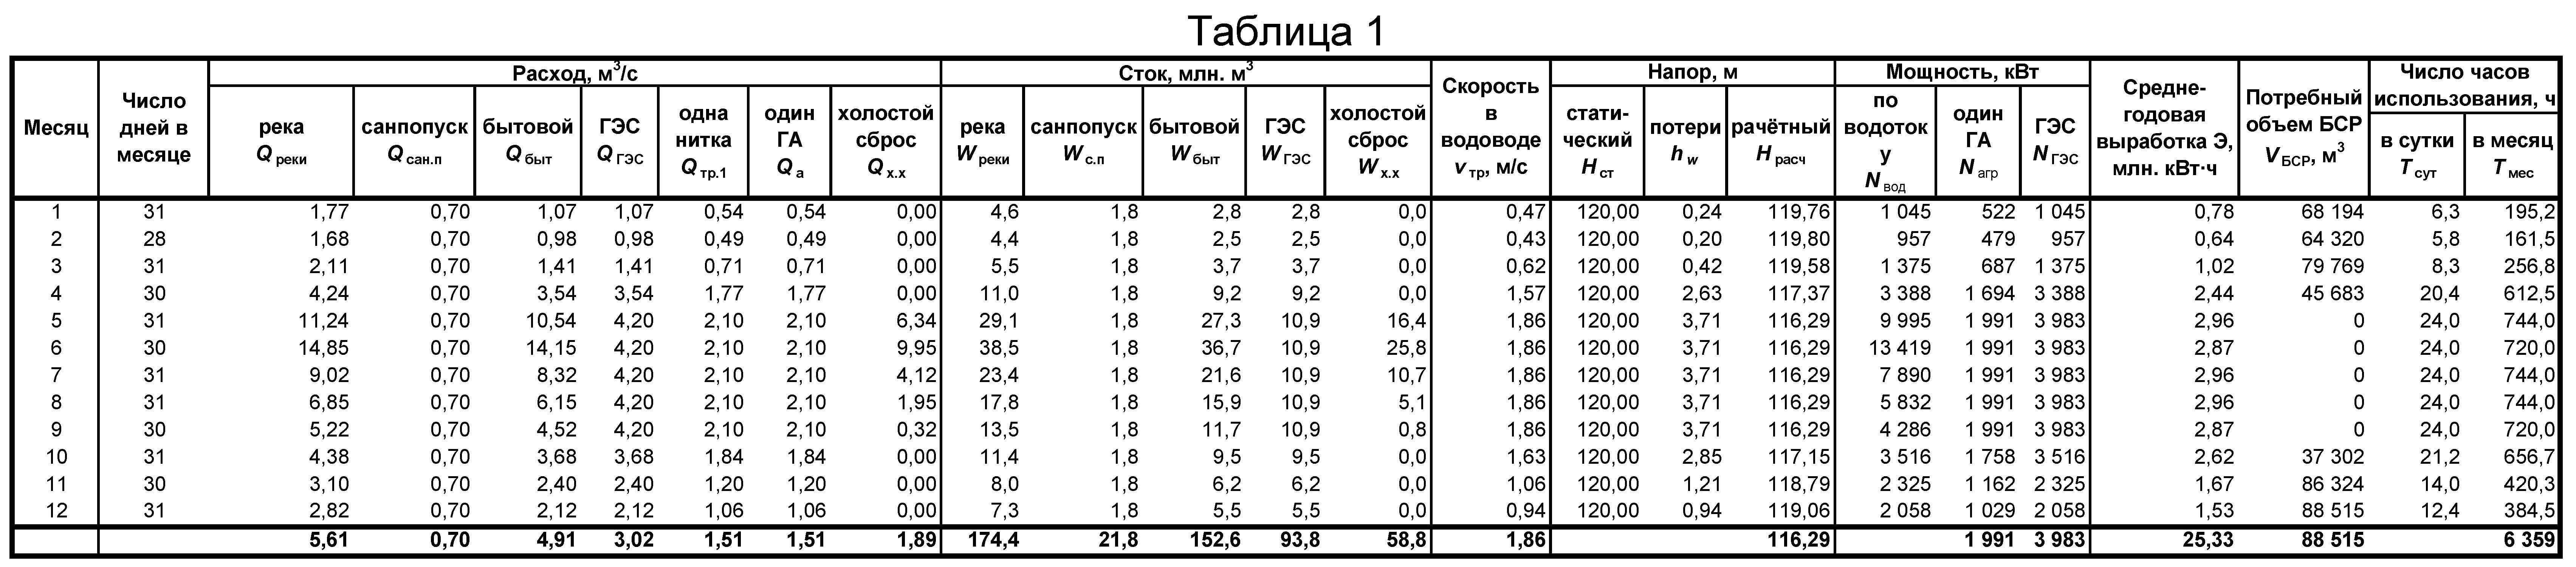 Схема водно-энергетического расчета по водотоку (таблица 1)